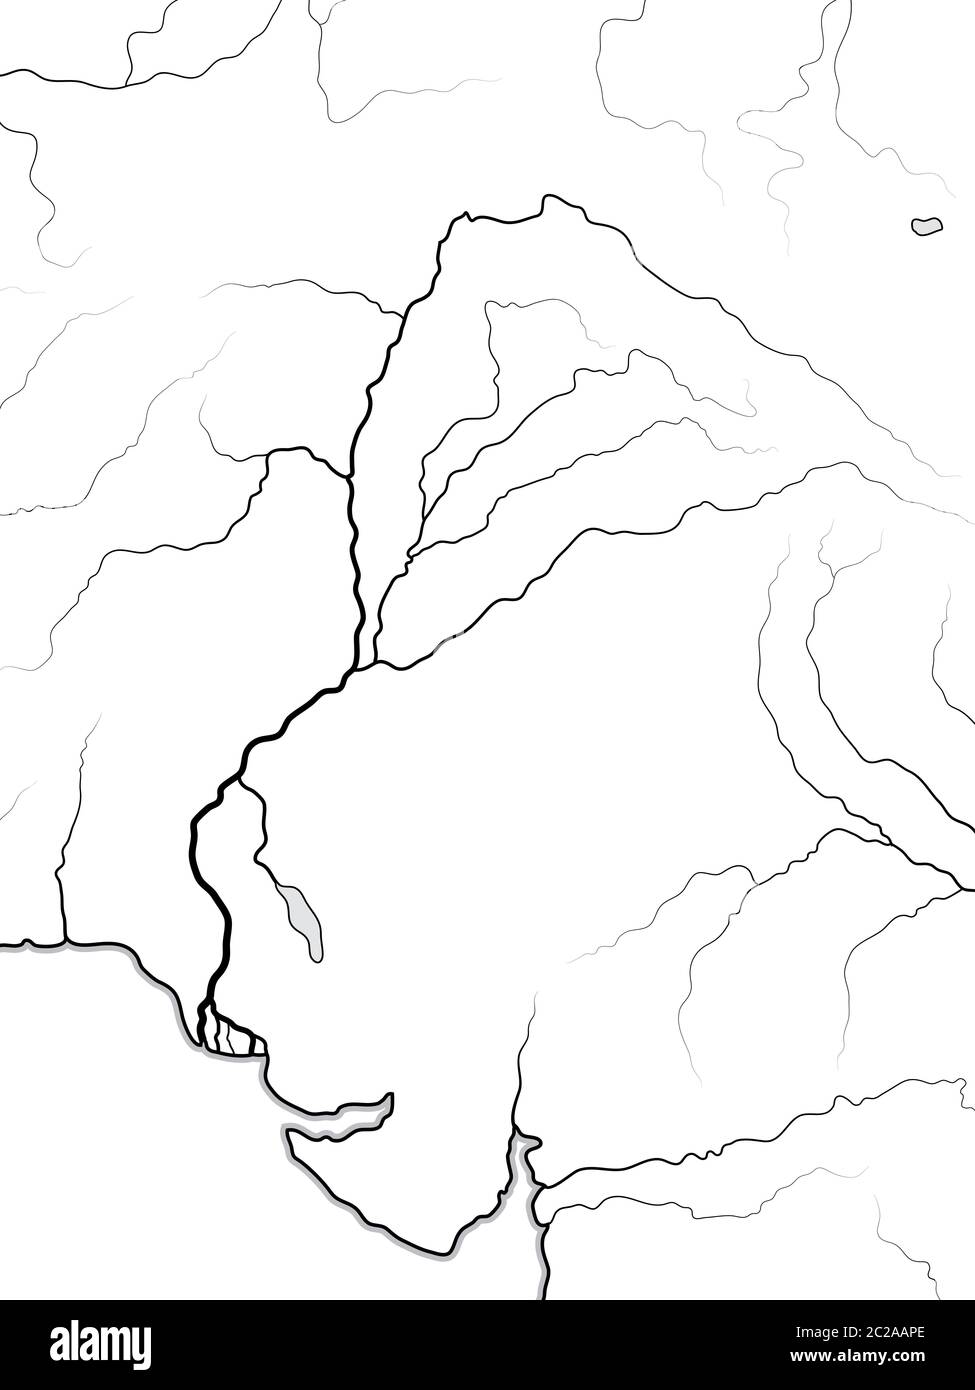 Mappa mondiale della Valle DELL'INDO: India, Pakistan, Indù, Pashtunistan, Punjab (cinque fiumi sacri). Grafico geografico. Foto Stock